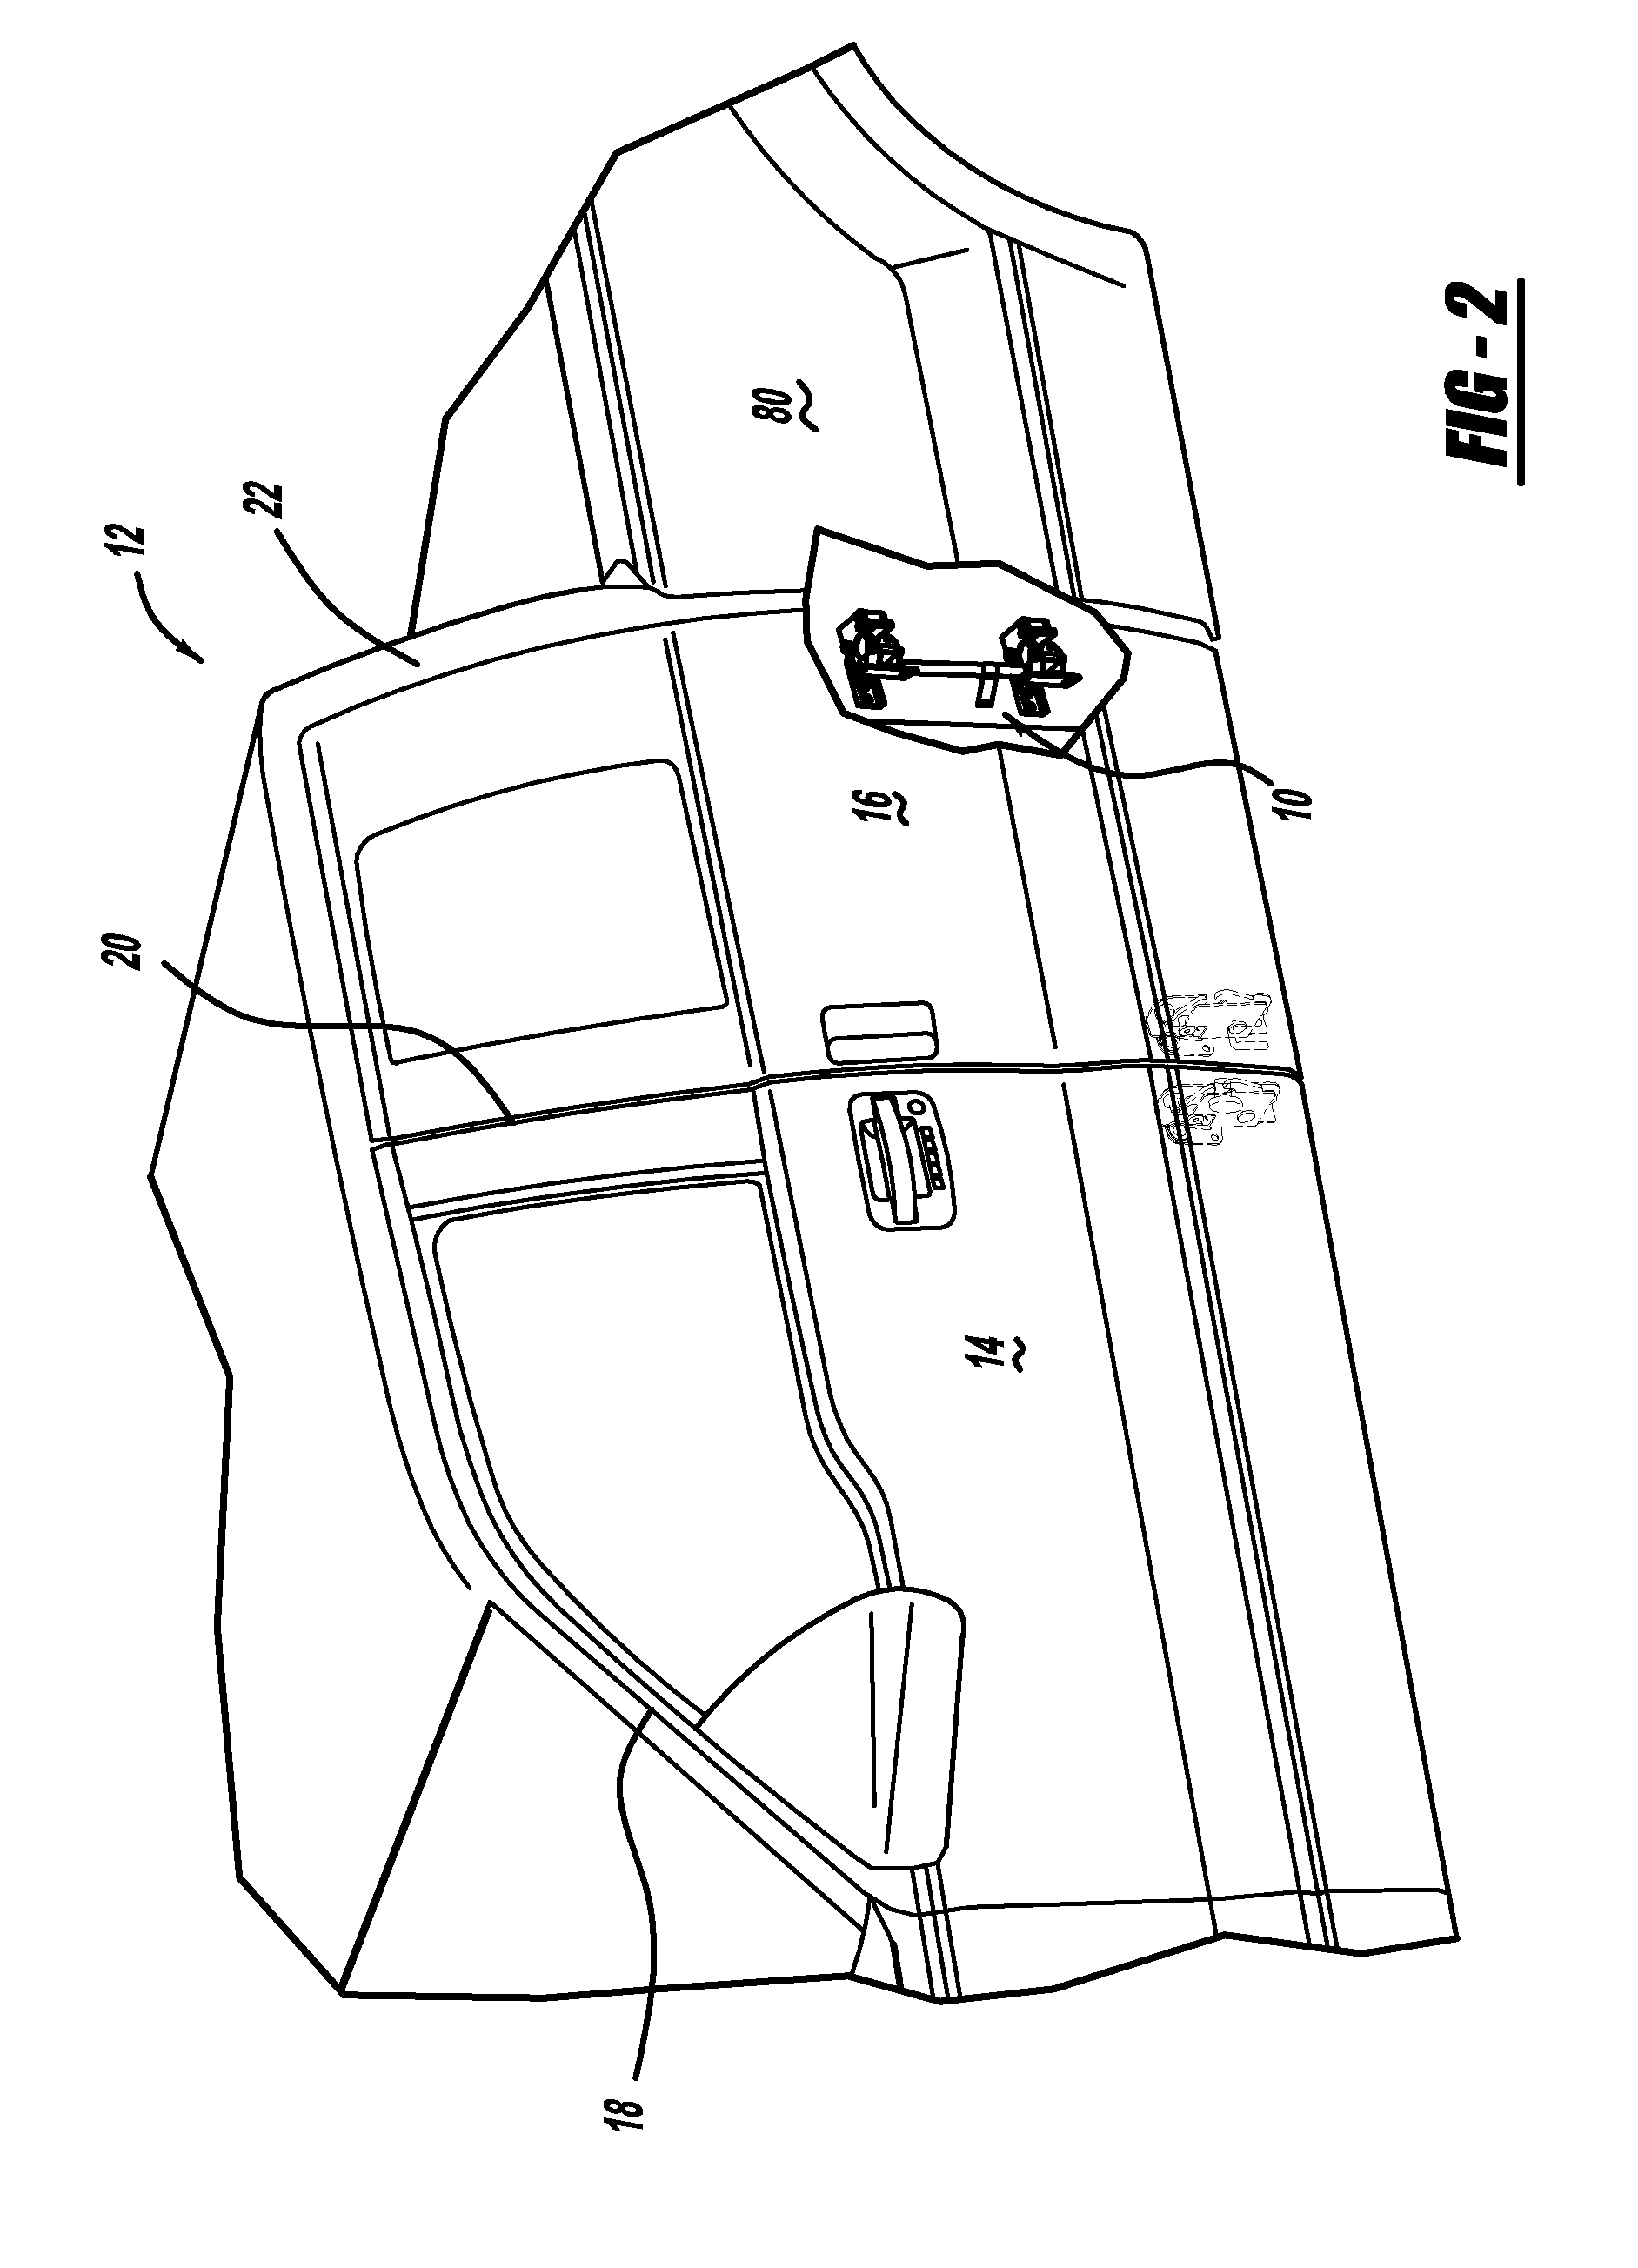 Vehicle 180 degree rear door articulating mechanism